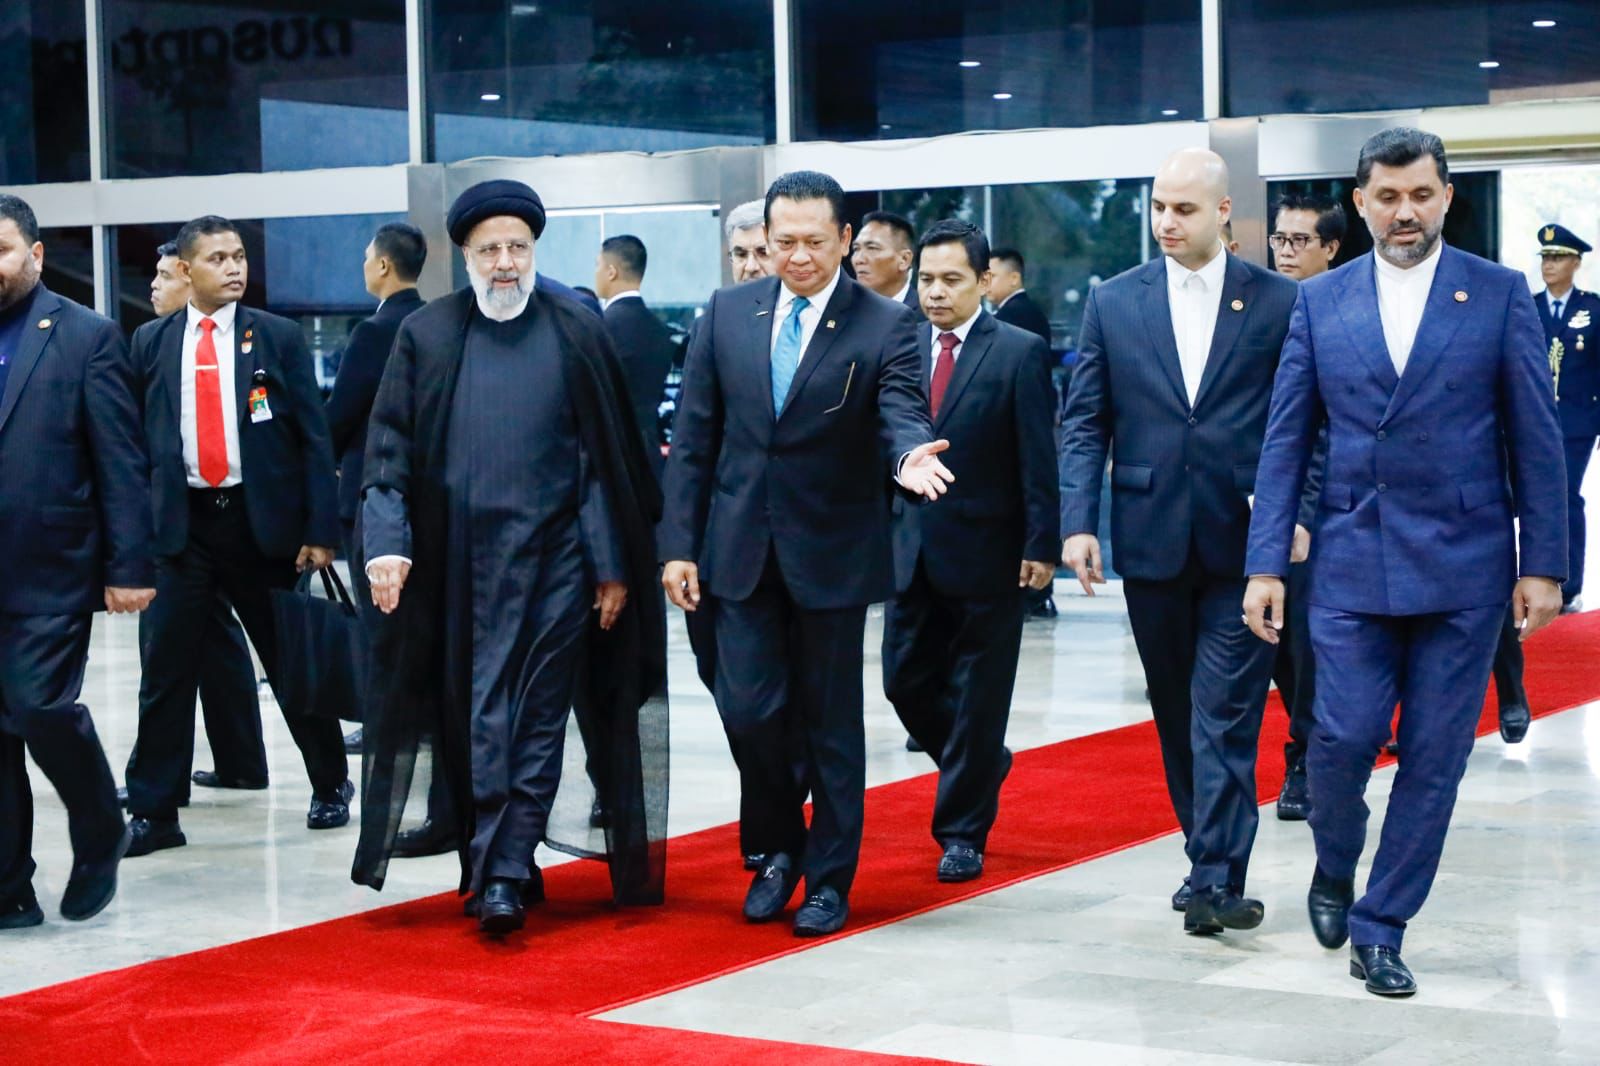 Terima Presiden Iran, Ketua MPR RI Bamsoet Dukung Tawaran Peningkatan Hubungan Bilateral Indonesia - Iran di Berbagai Sektor